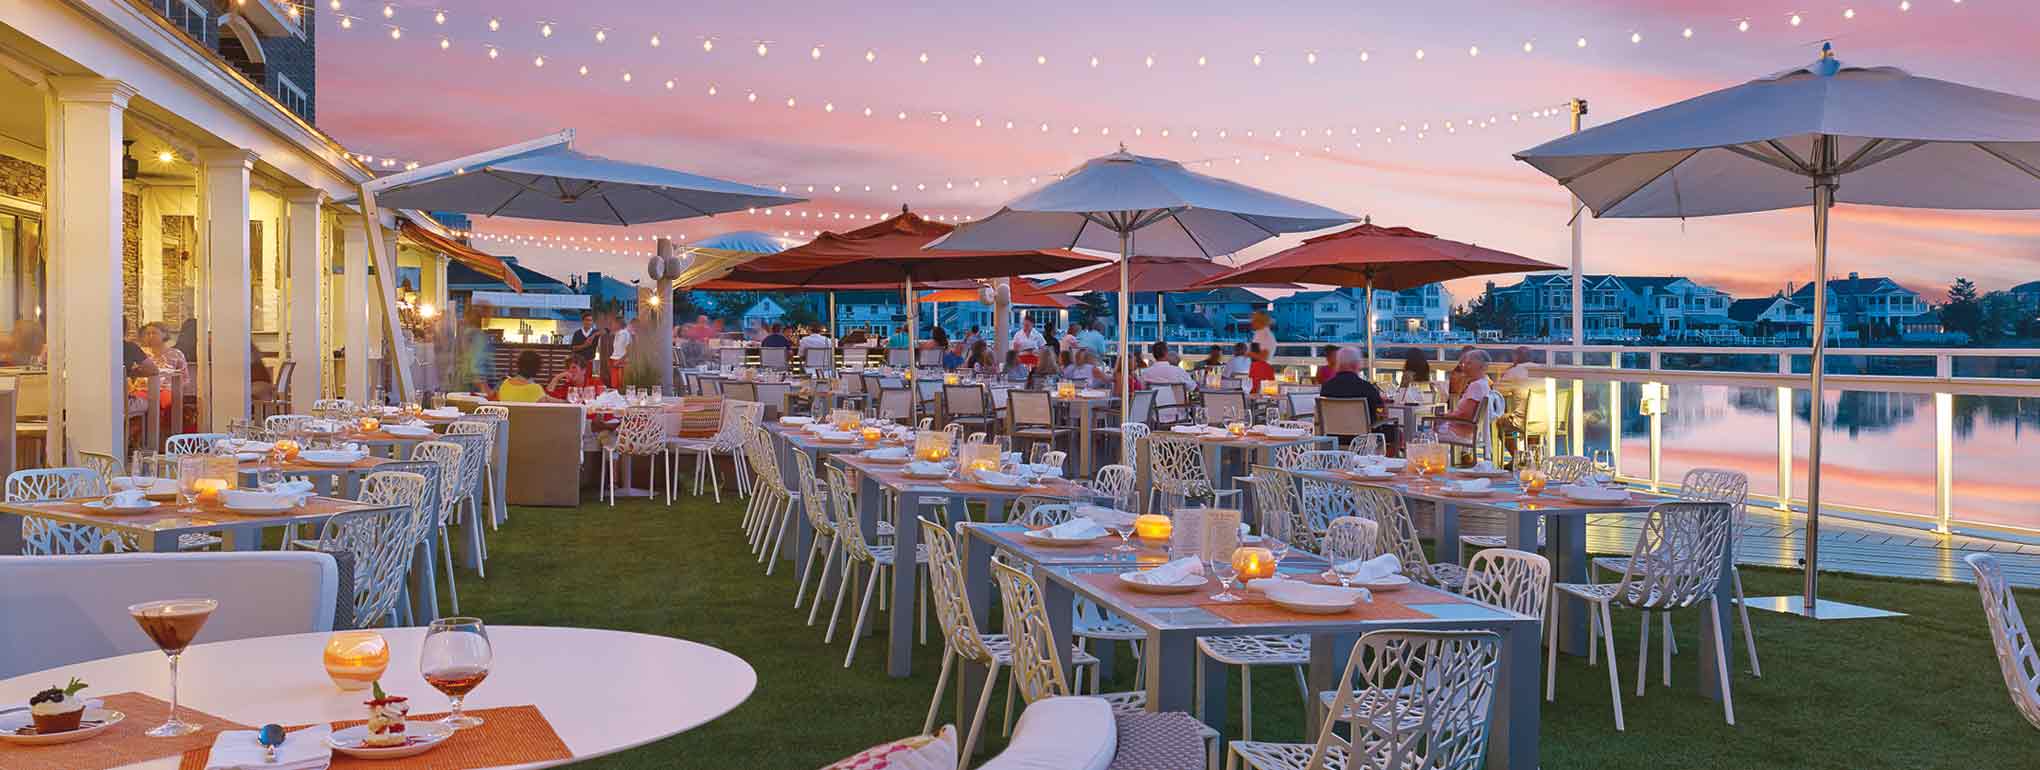 I 25 migliori ristoranti del New Jersey per cenare all'aperto's 25 best restaurants for outdoor dining